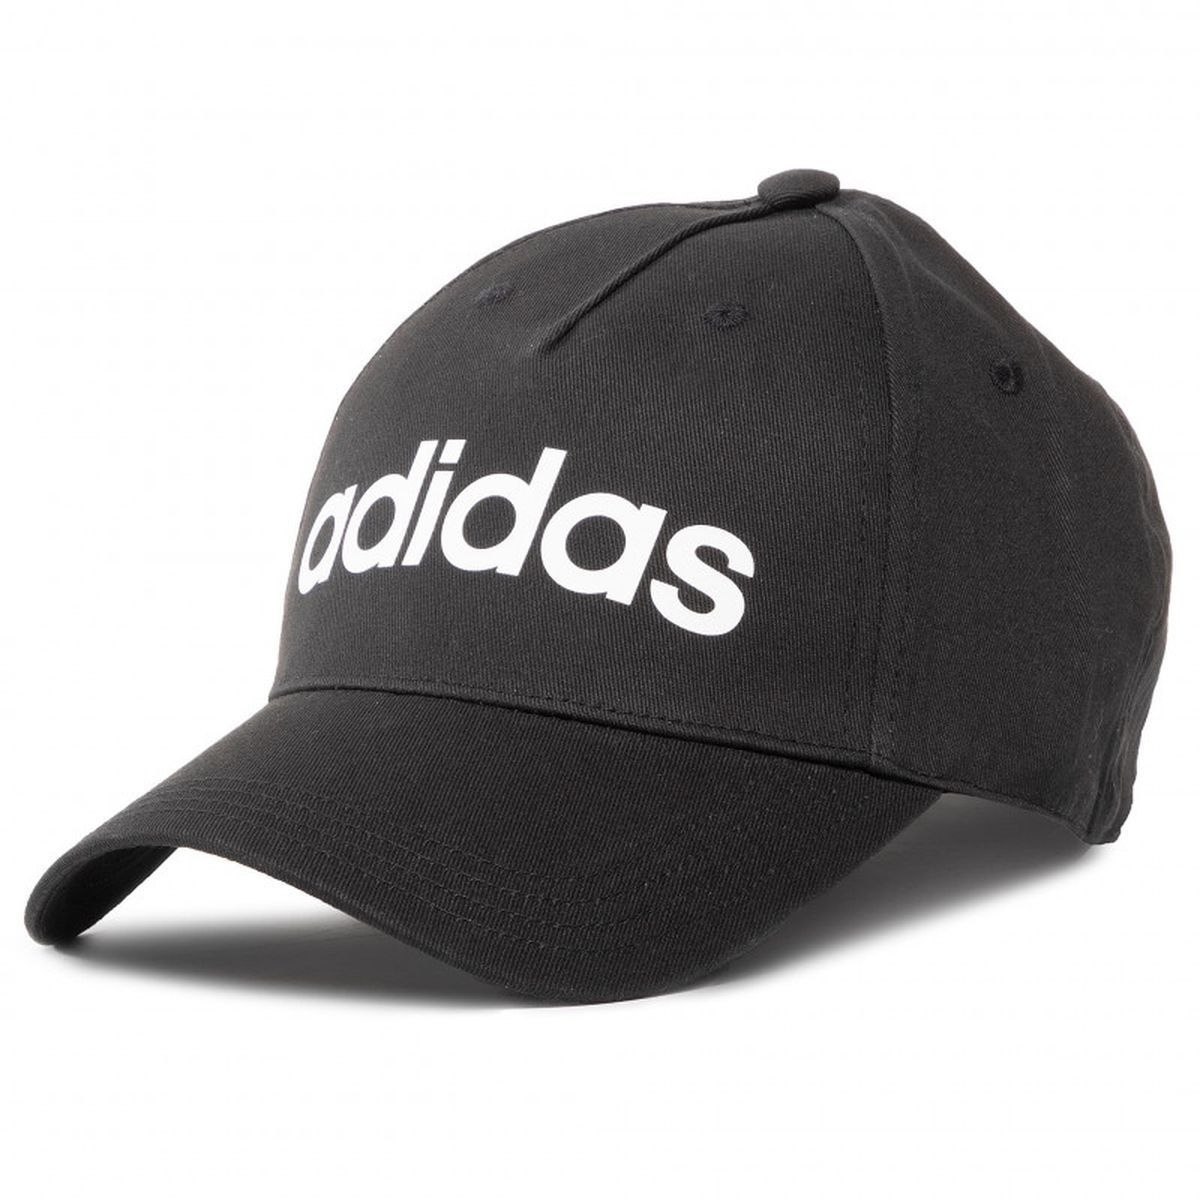 Casquette Adidas en coton noir avec logo et nom de la marque brodé